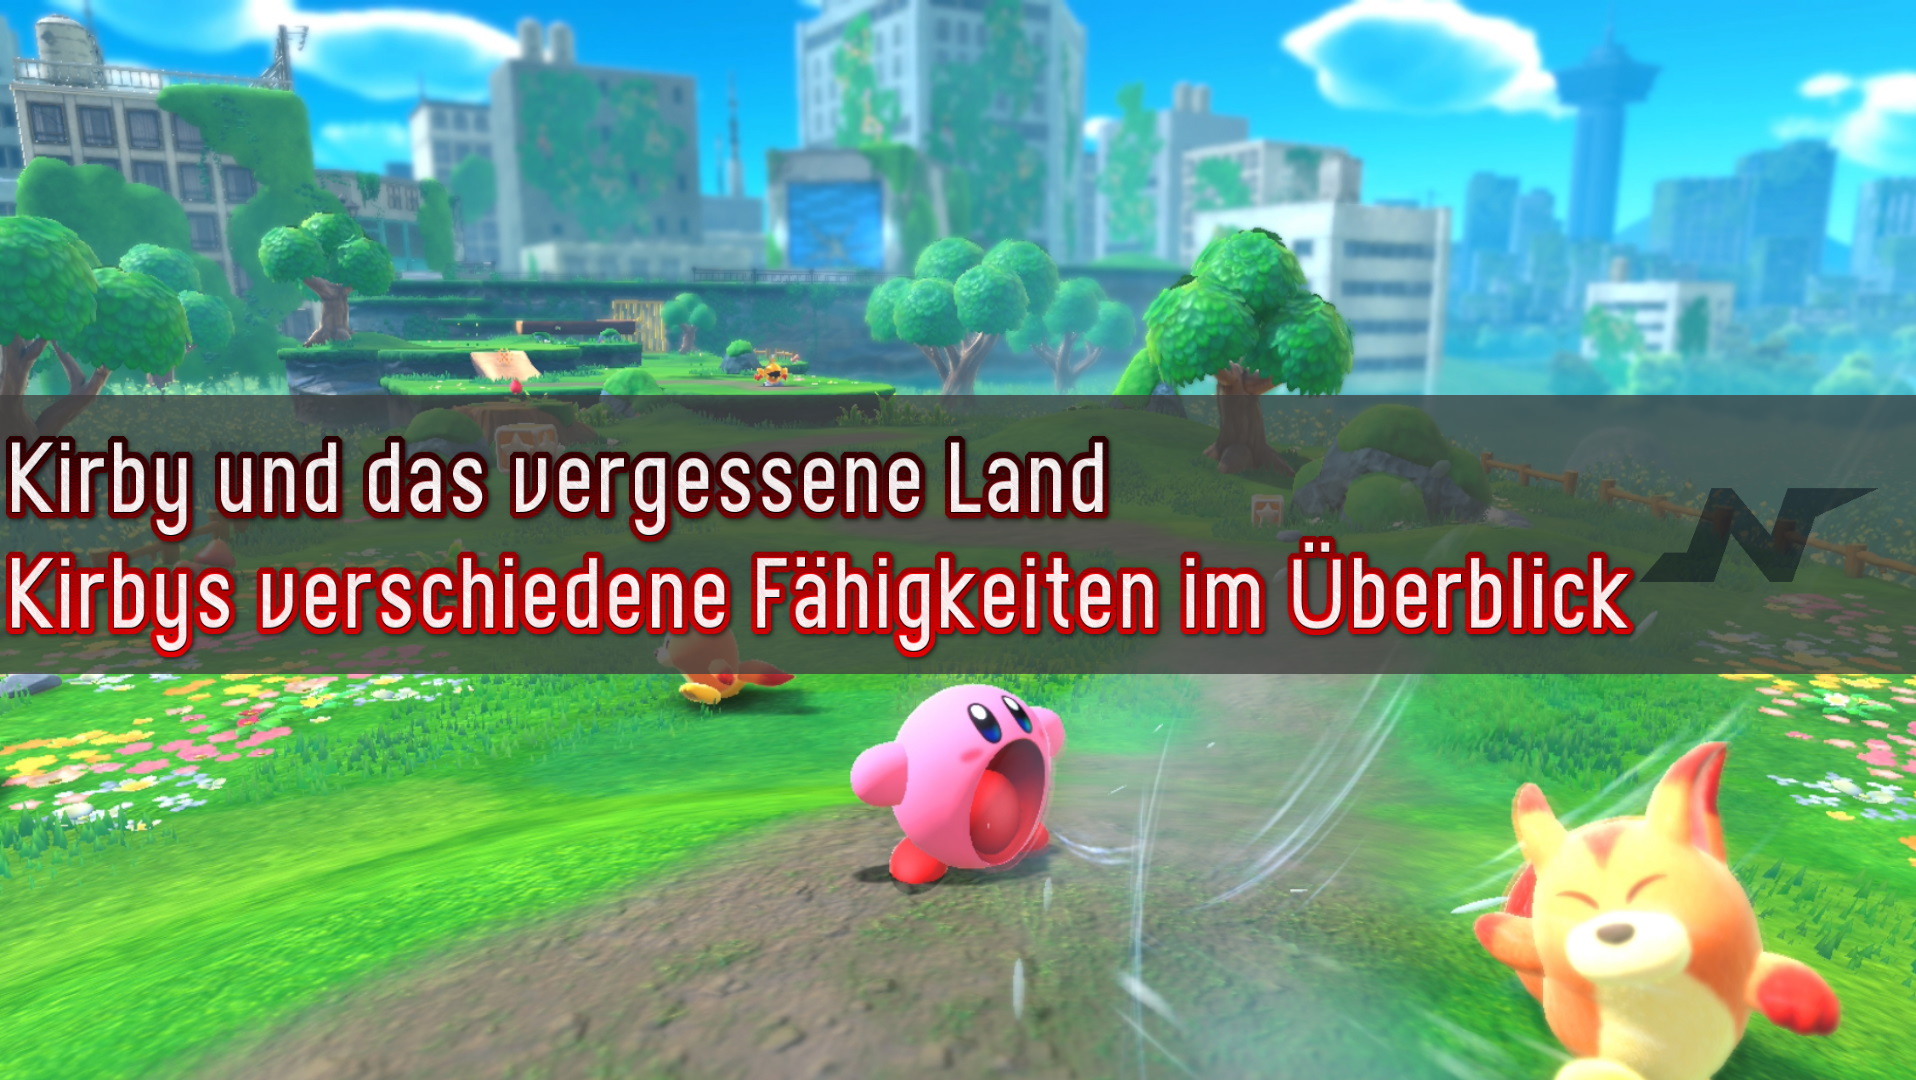 Kirby und das vergessene Land - Kirbys verschiedene Fähigkeiten im